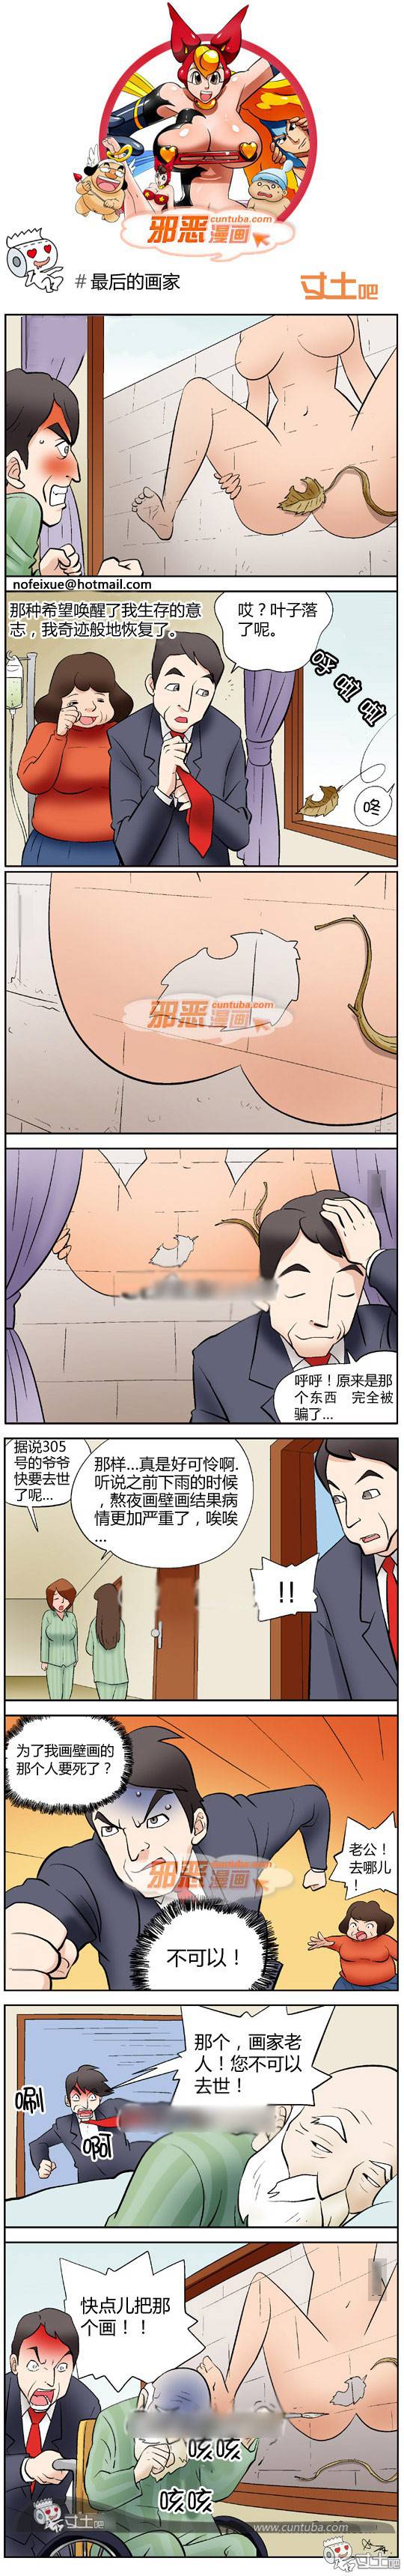 邪恶漫画爆笑囧图第269刊：如此相似的曾经